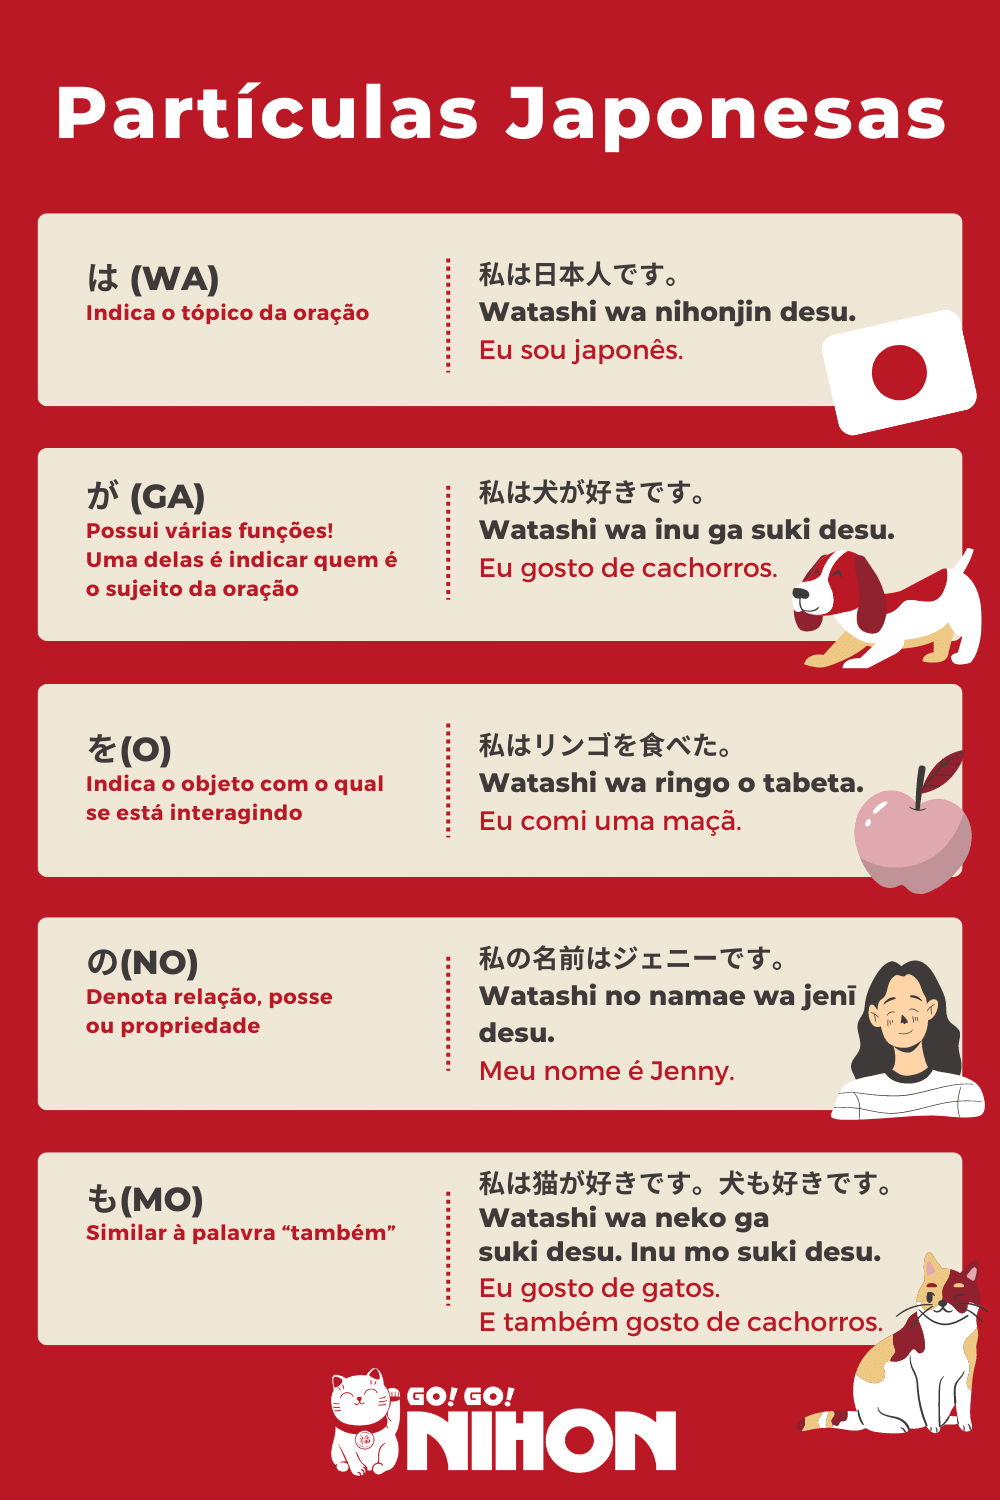 Infográfico de partículas japonesas em português